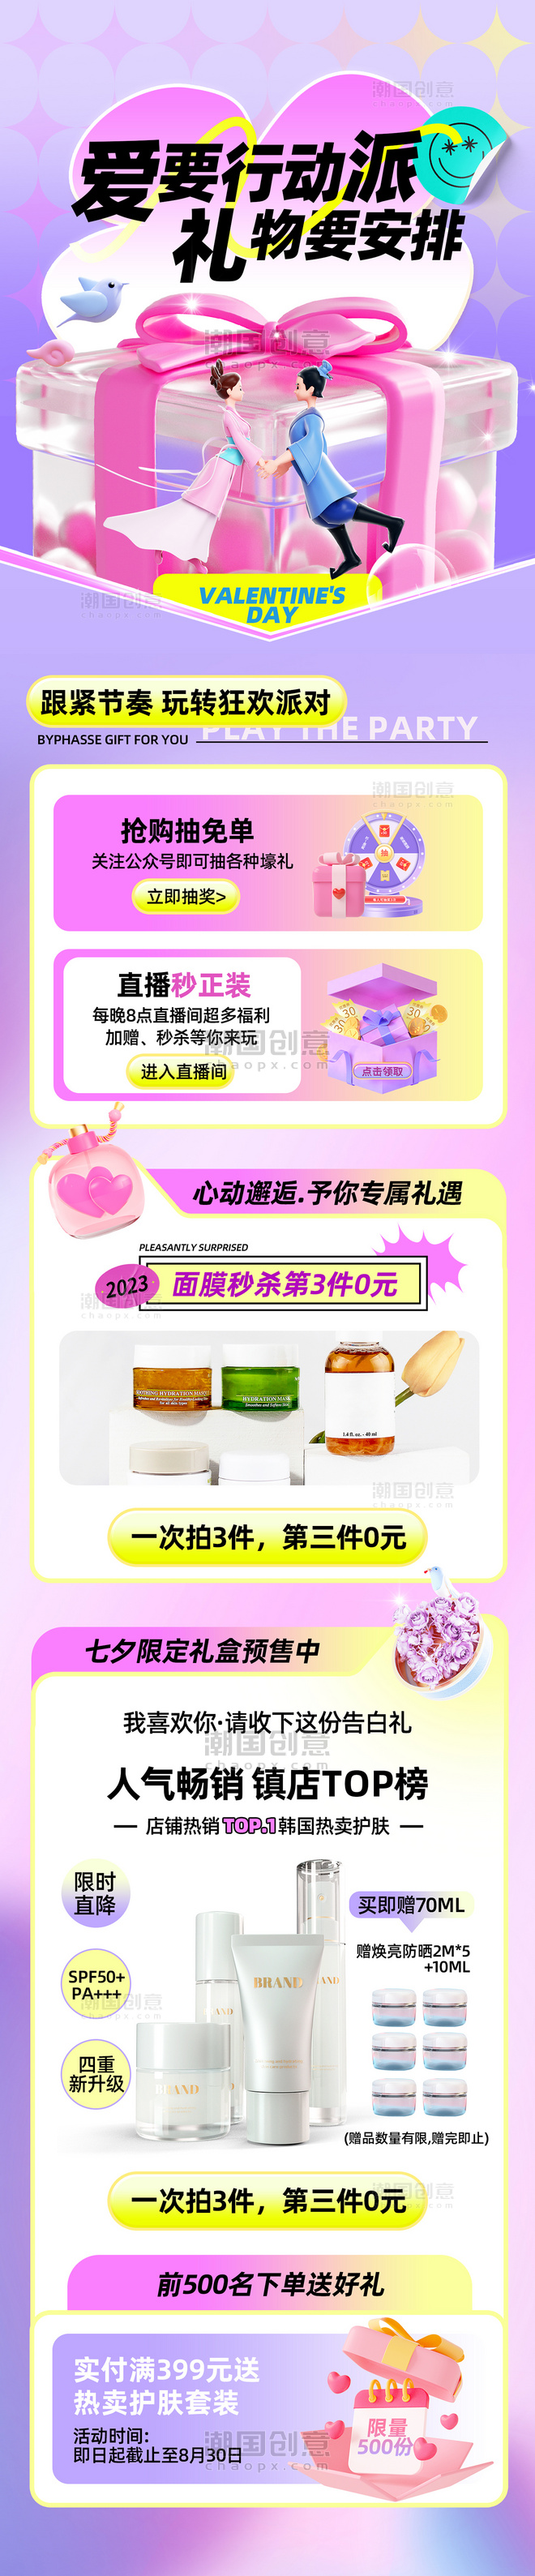 紫色创意3D立体风七夕节借势营销活动